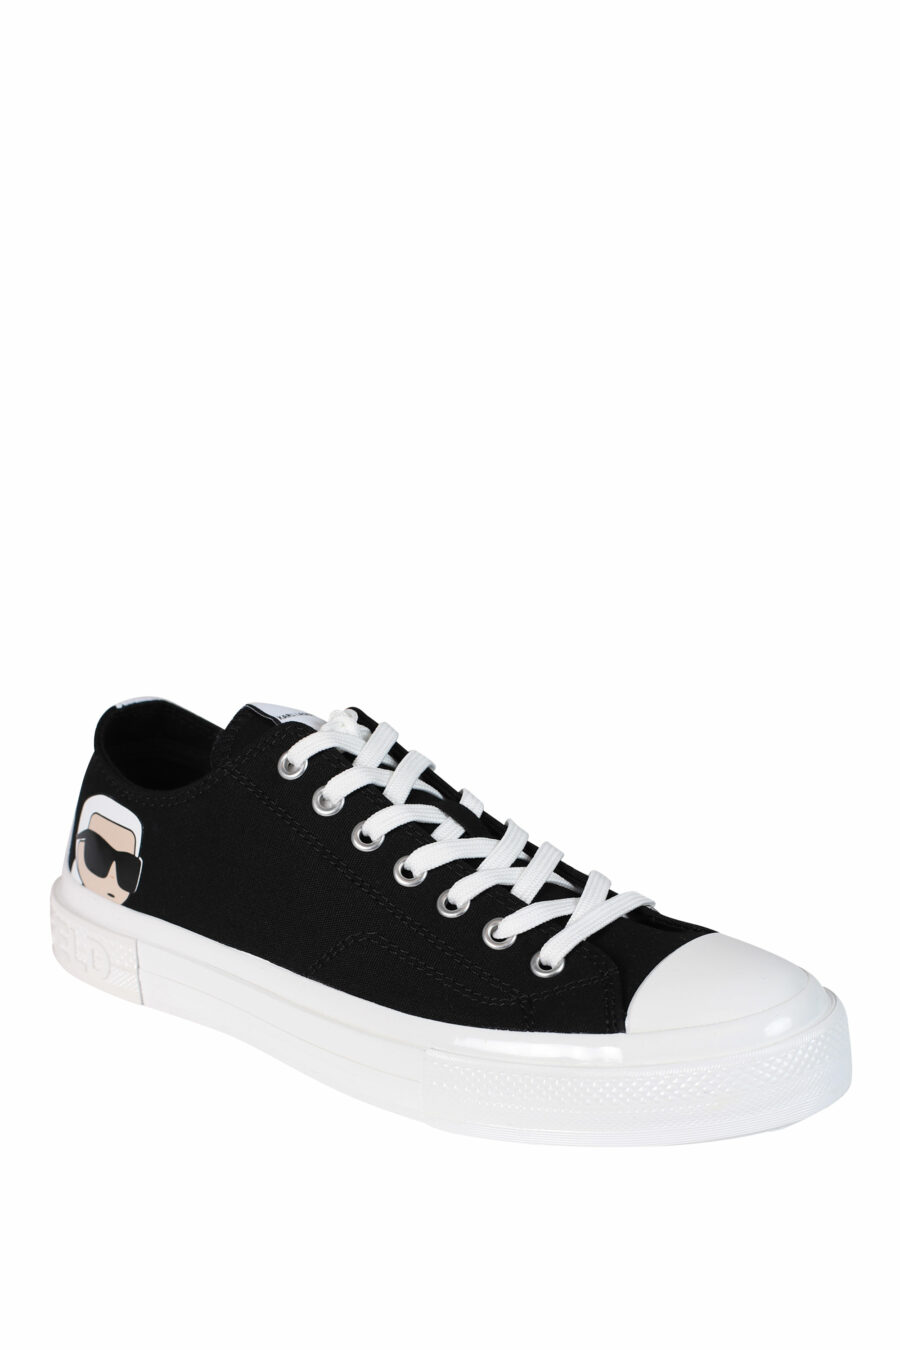 Zapatillas negras con logo "karl" y suela blanca - 5059529249655 2